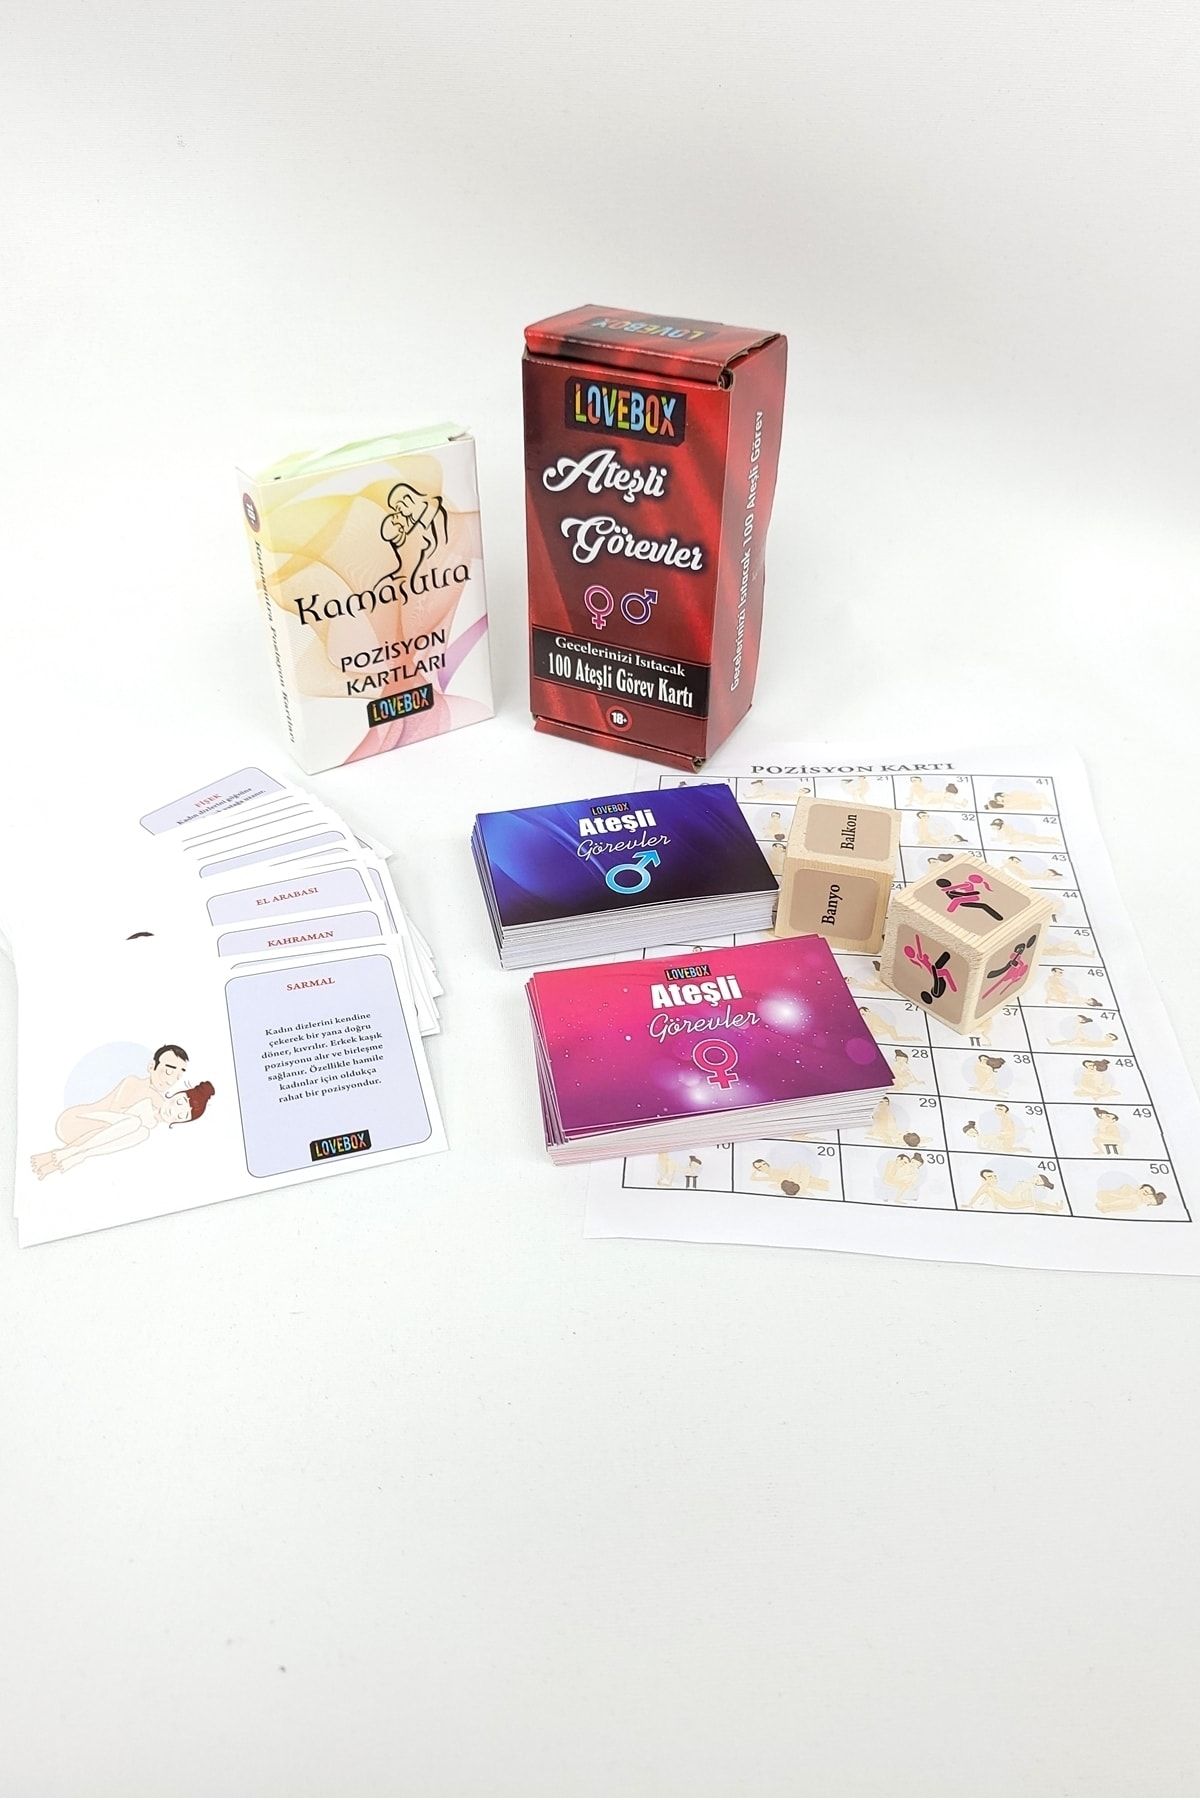 Lovebox Görev Kartları Oyunu Ve Kamasutra Pozisyon Kartları Oyunu Ikili Fantezi Oyun Seti Fiyatı 